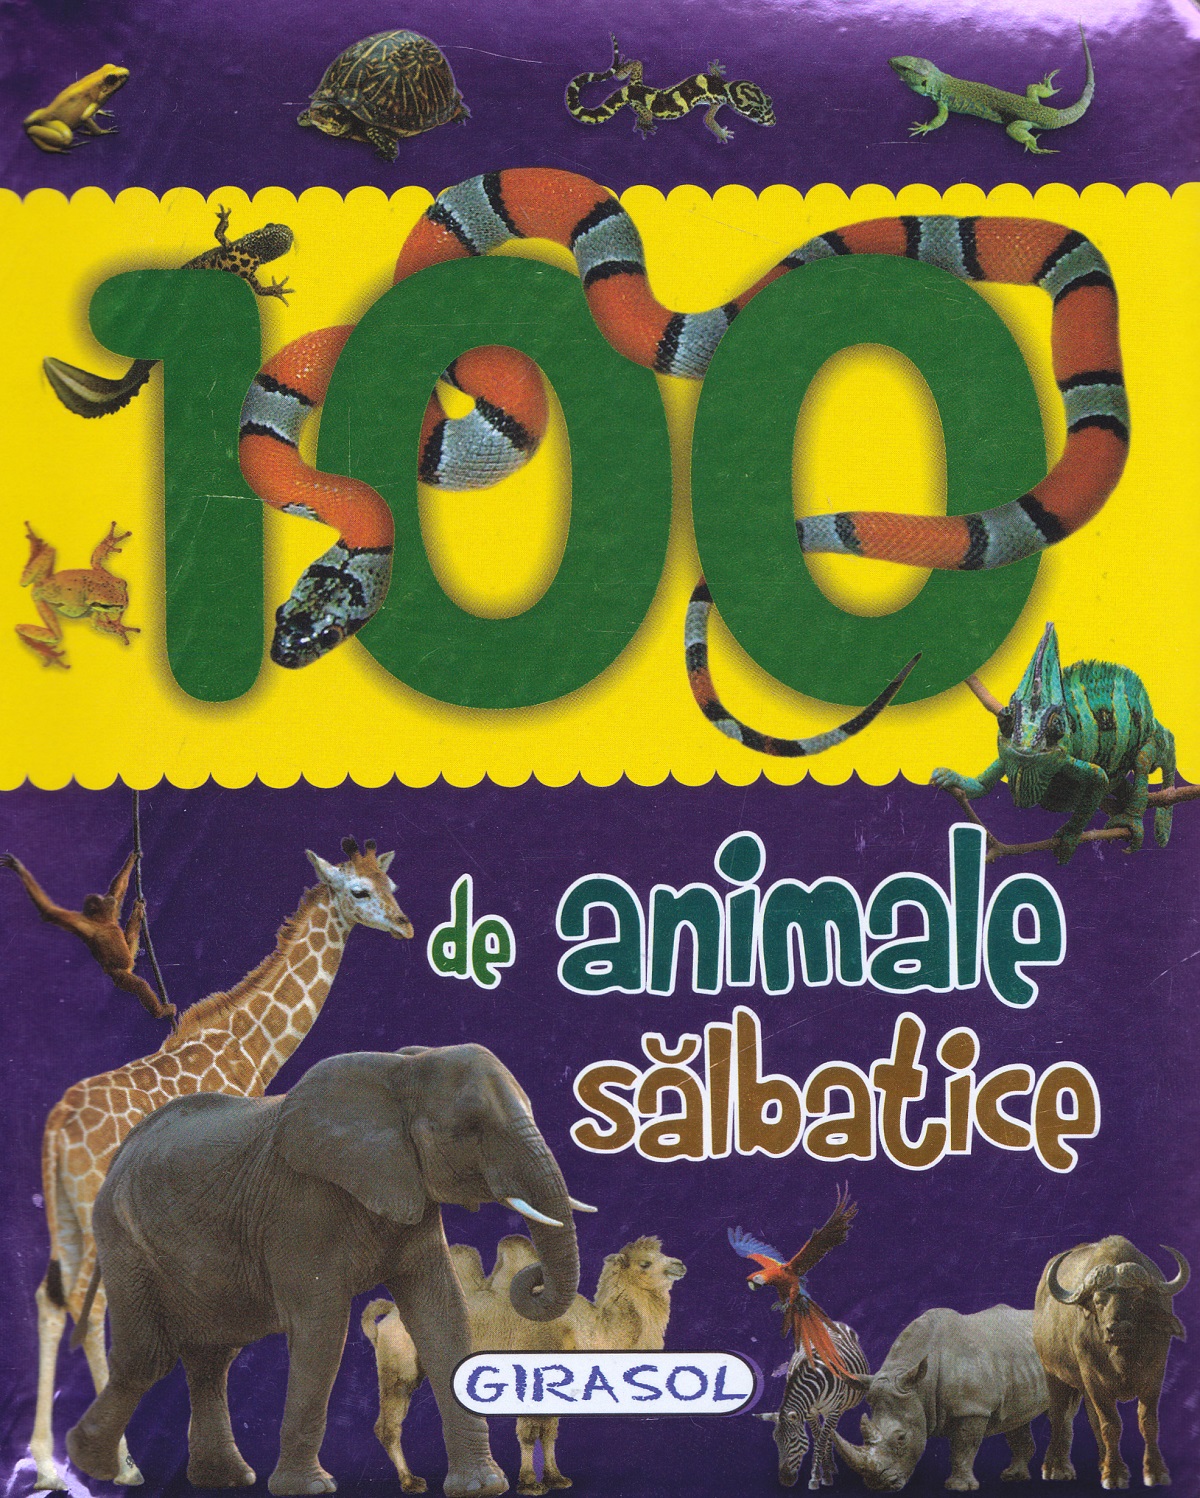 100 de animale salbatice